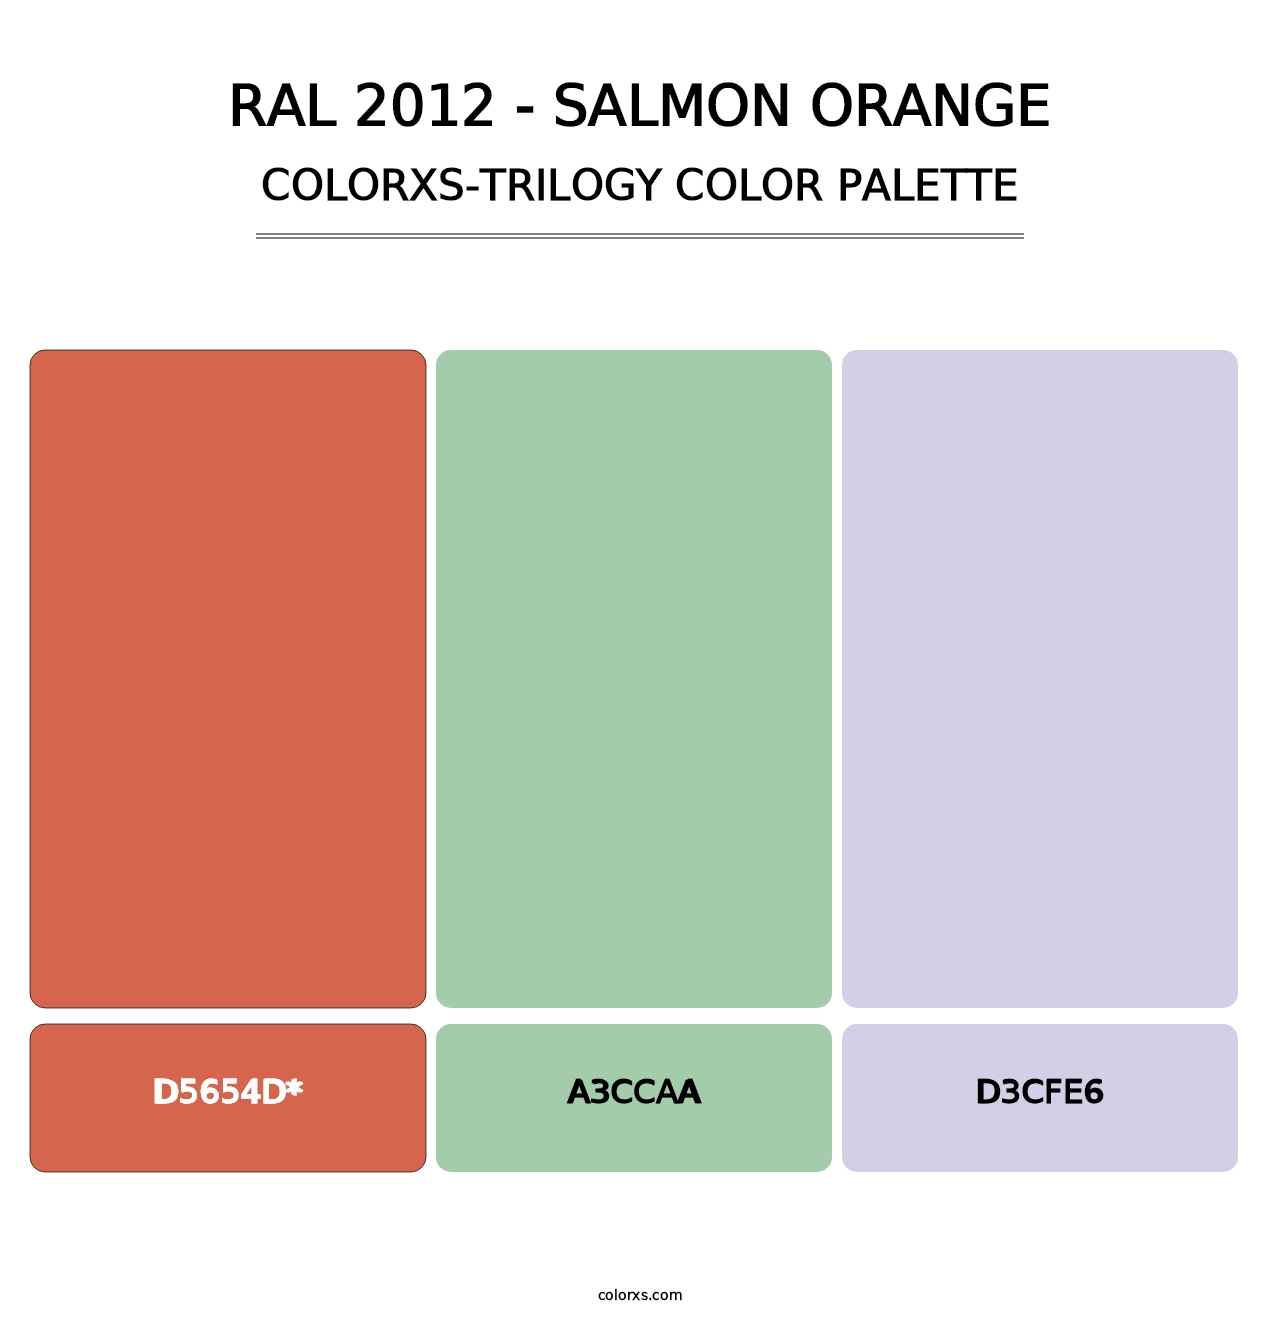 RAL 2012 - Salmon Orange - Colorxs Trilogy Palette